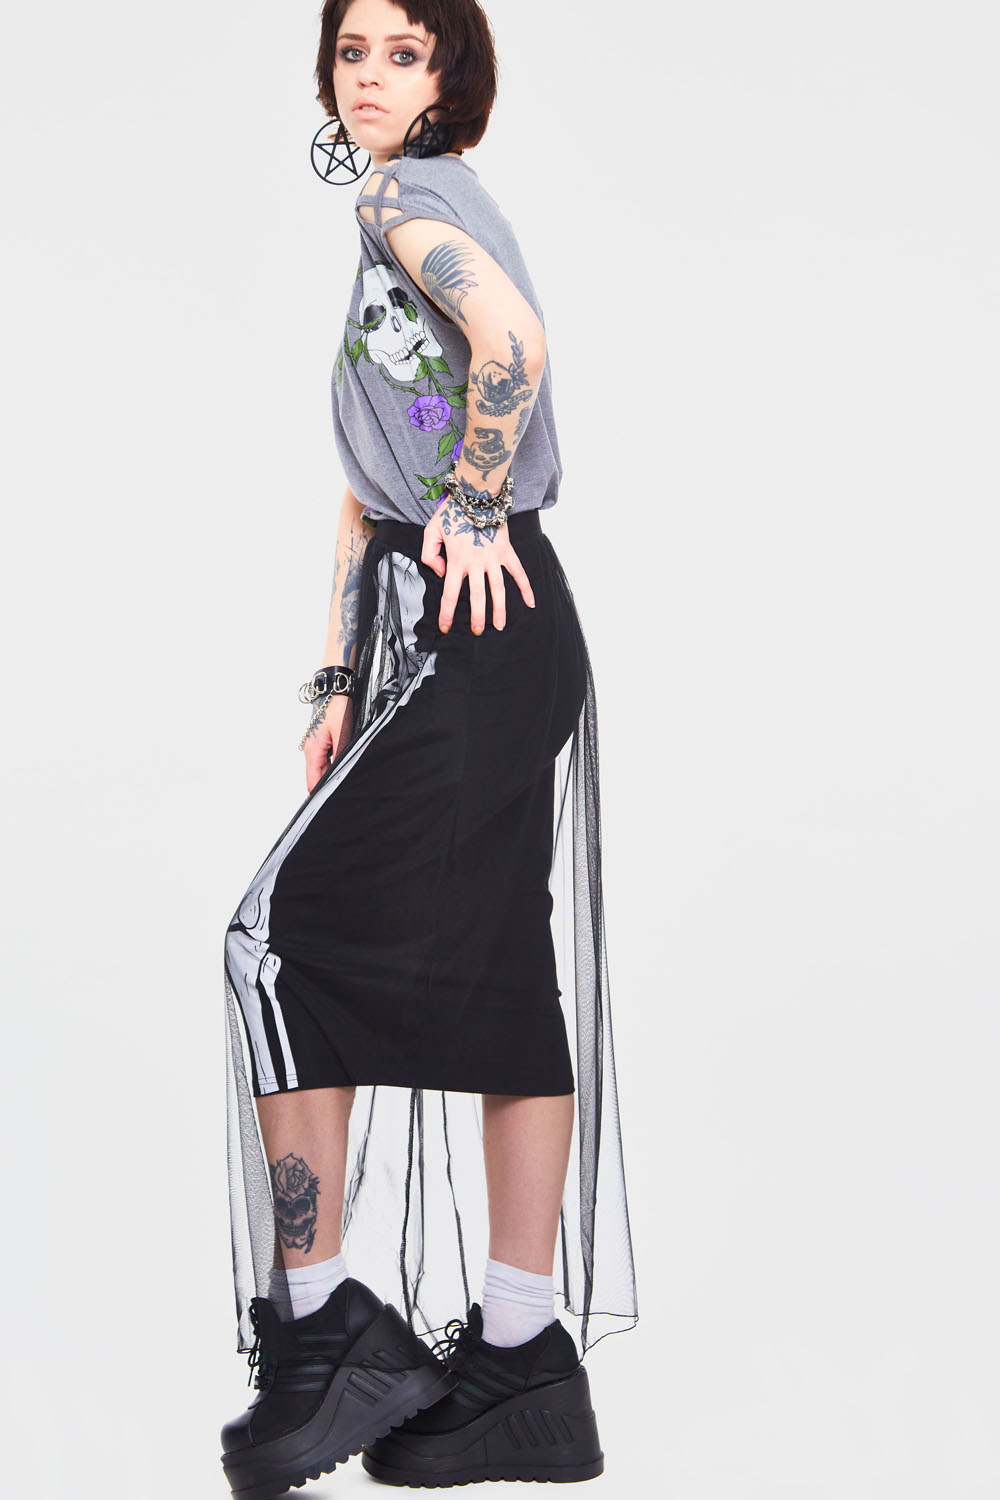 Skeleton Layer Skirt